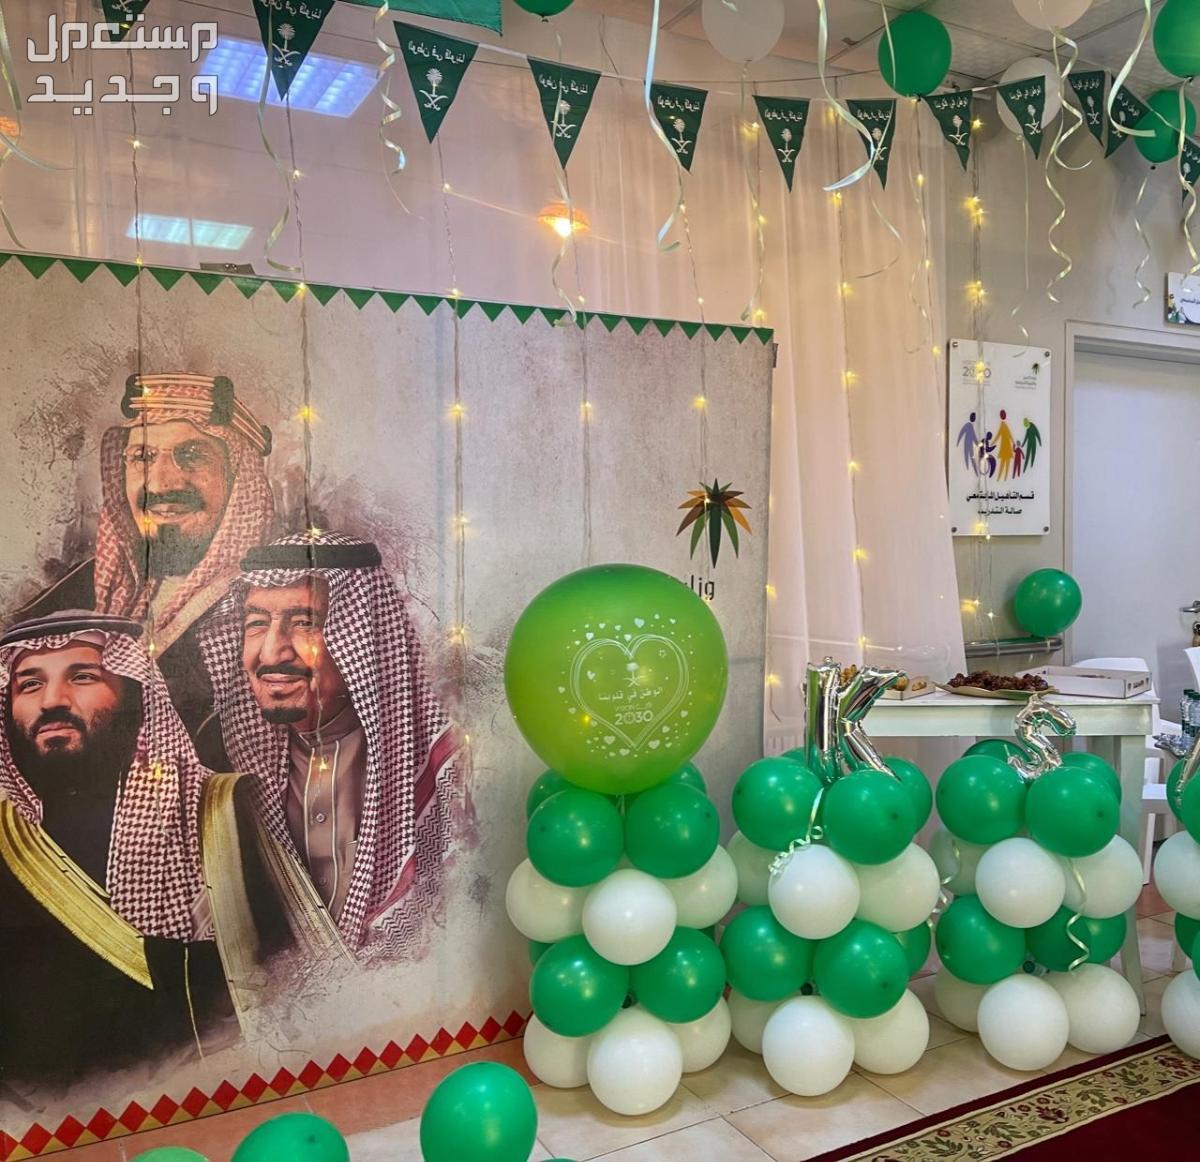 صور ديكورات داخلية بمناسبة اليوم الوطني السعودي 1445 في الإمارات العربية المتحدة ديكورات داخلية بمناسبة اليوم الوطني